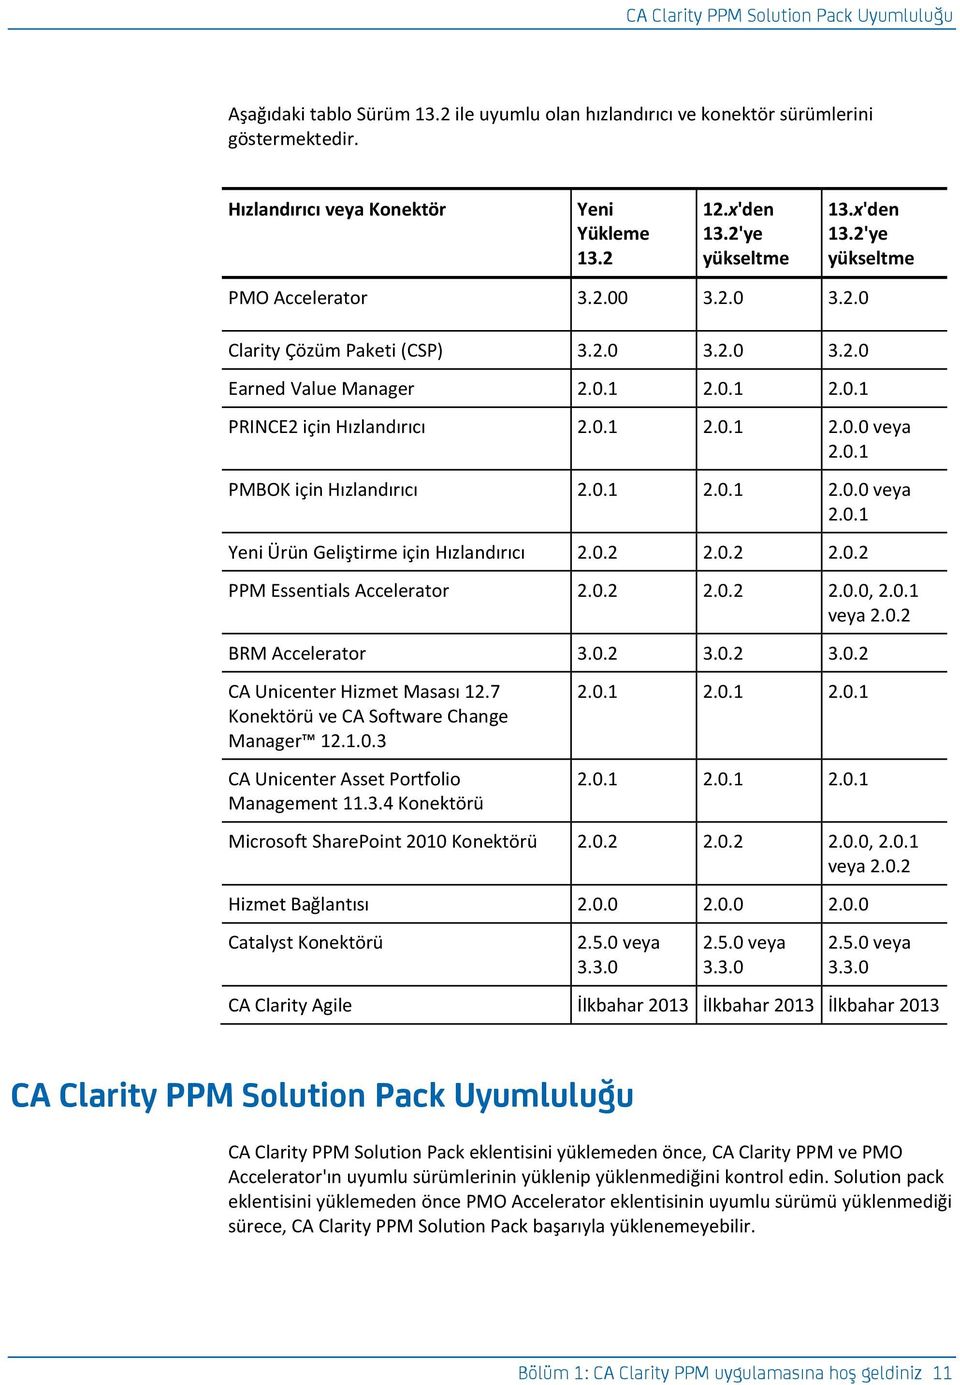 0.1 PMBOK için Hızlandırıcı 2.0.1 2.0.1 2.0.0 veya 2.0.1 Yeni Ürün Geliştirme için Hızlandırıcı 2.0.2 2.0.2 2.0.2 PPM Essentials Accelerator 2.0.2 2.0.2 2.0.0, 2.0.1 veya 2.0.2 BRM Accelerator 3.0.2 3.